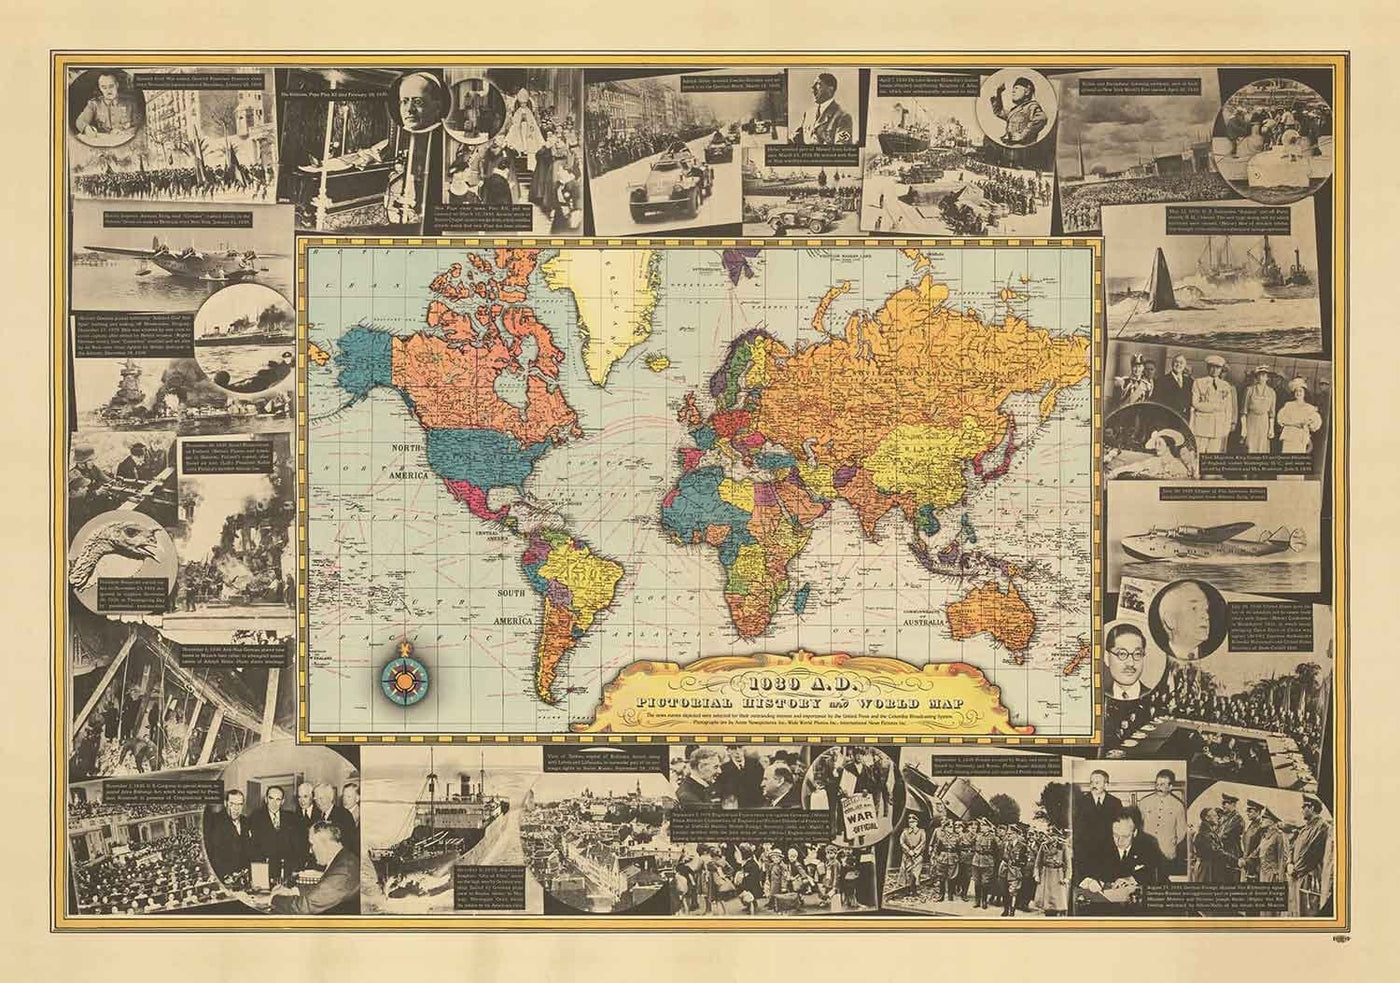 Mapa del mundo de la Segunda Guerra Mundial, 1939 - Antiguos acontecimientos históricos - Hitler invade Polonia, los aliados declaran la Segunda Guerra Mundial, el Papa muere